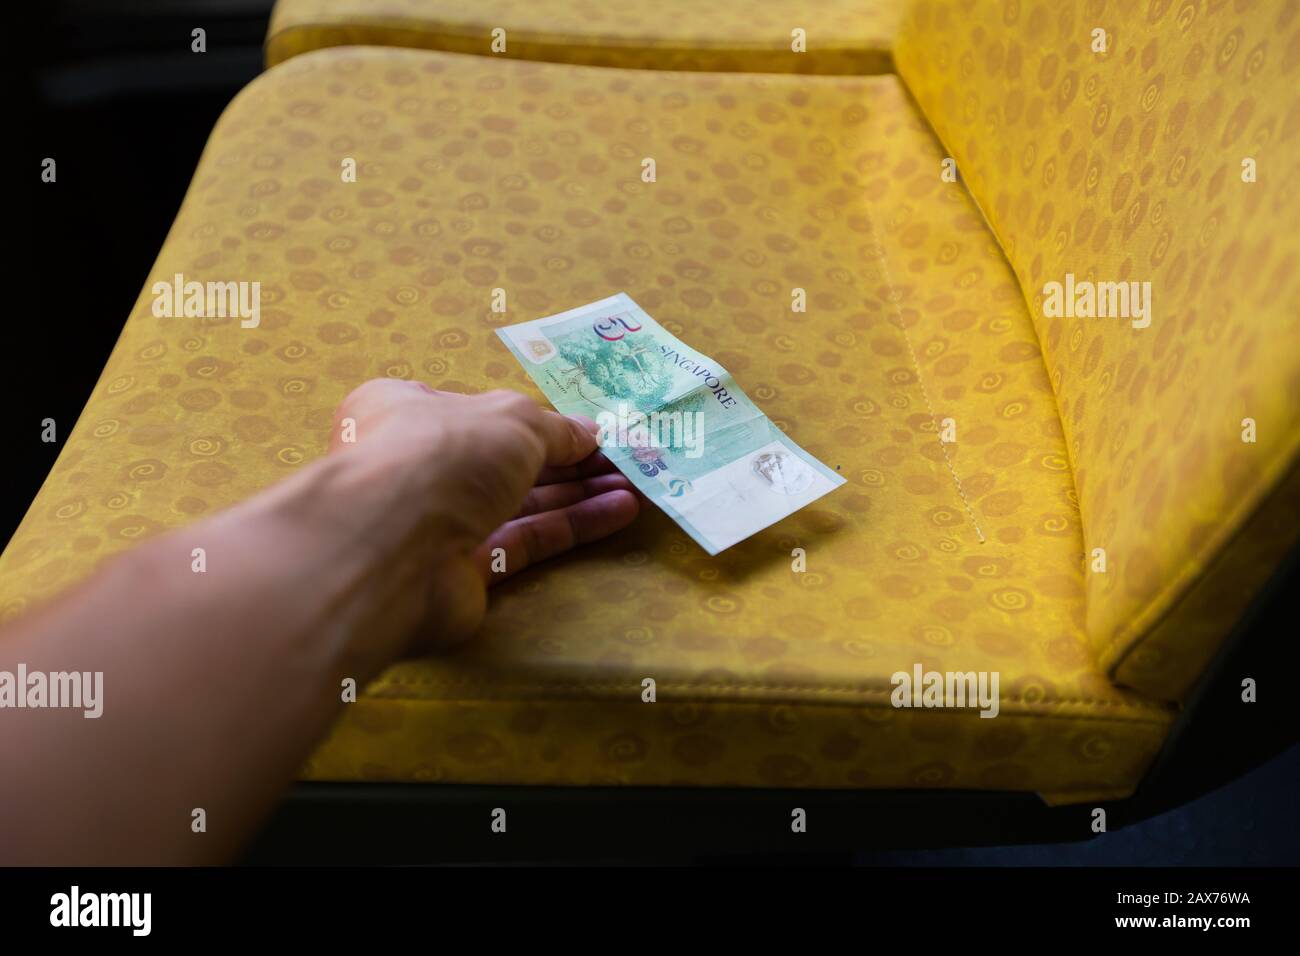 Una mano si allunga per prendere la nota di Singapore da cinque dollari sul posto dell'autobus. Foto Stock